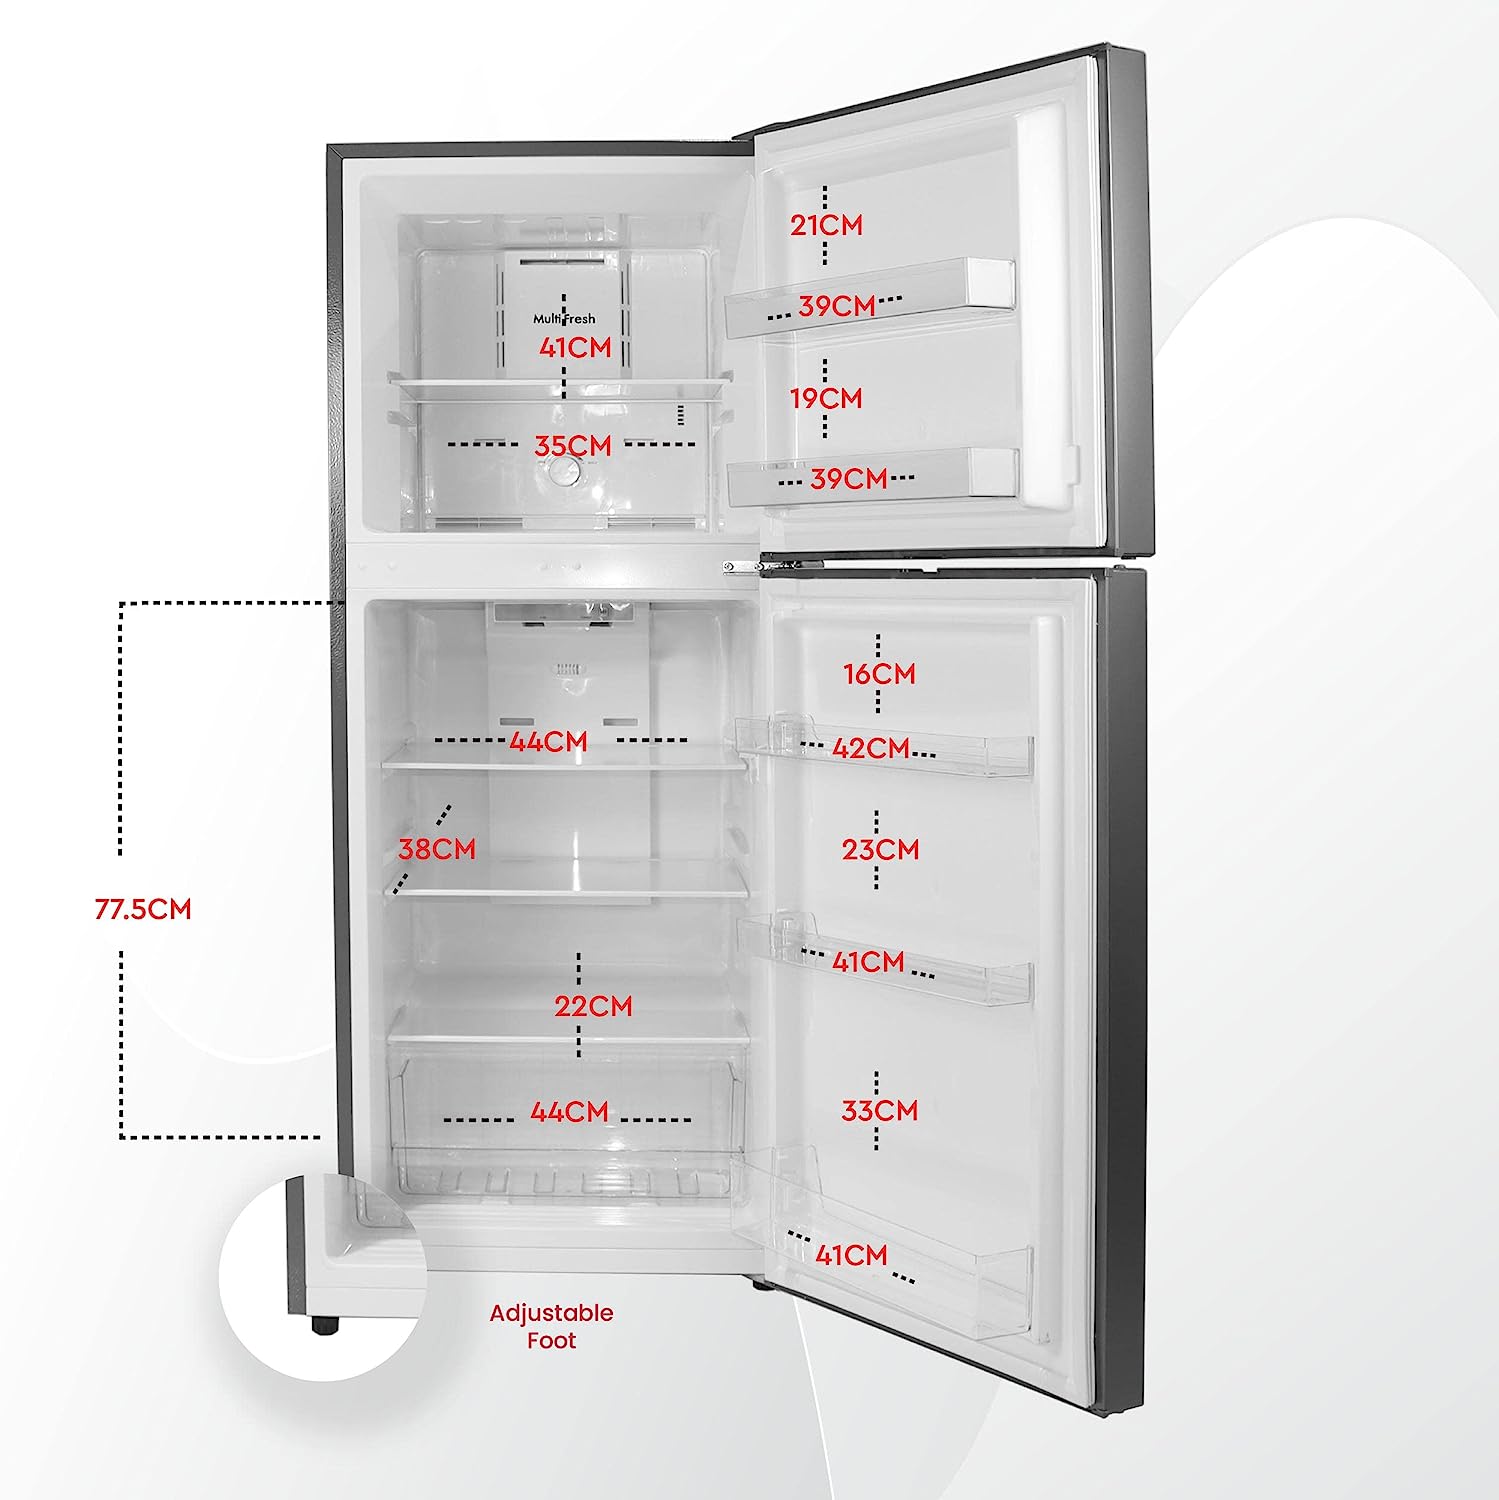 Nobel NR280NF | Double Door Refrigerators 